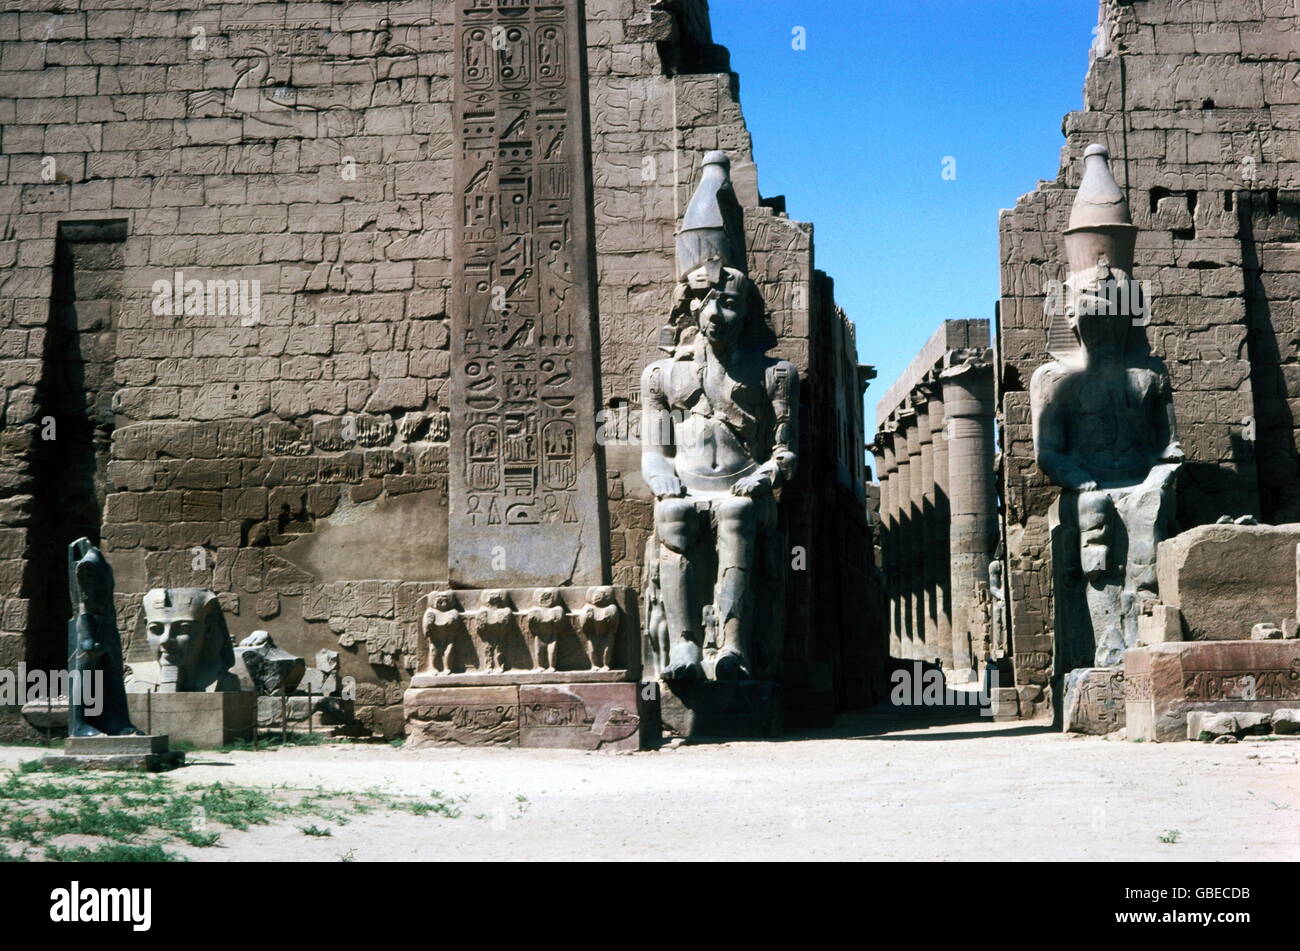 Géographie / Voyage, Egypte, Luxor, temple de Louxor (temple d'Amun-Ra), statues du roi Ramses II (vers 1290 - 1224 av. J.-C., dynastie de 19h), droits supplémentaires-Clearences-non disponible Banque D'Images